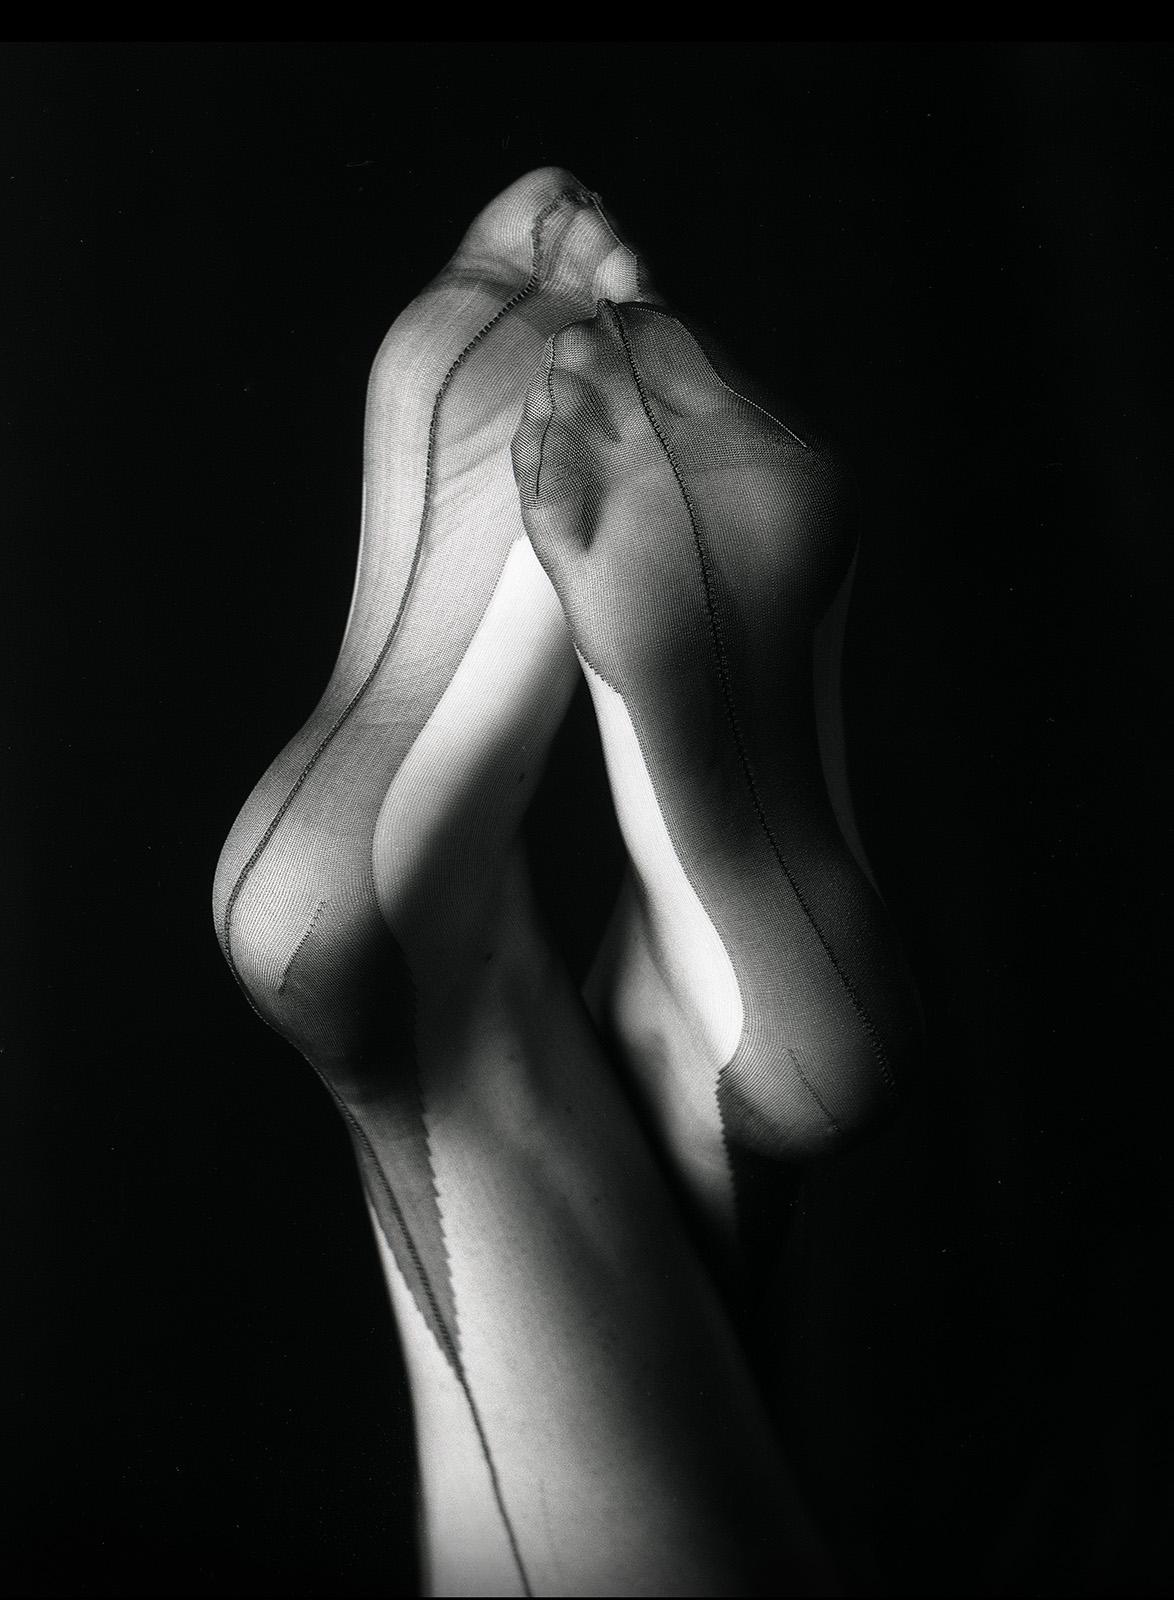 Legen Sie die Füße hoch - Signierter Kunstdruck in limitierter Auflage, Sensual, Stillleben